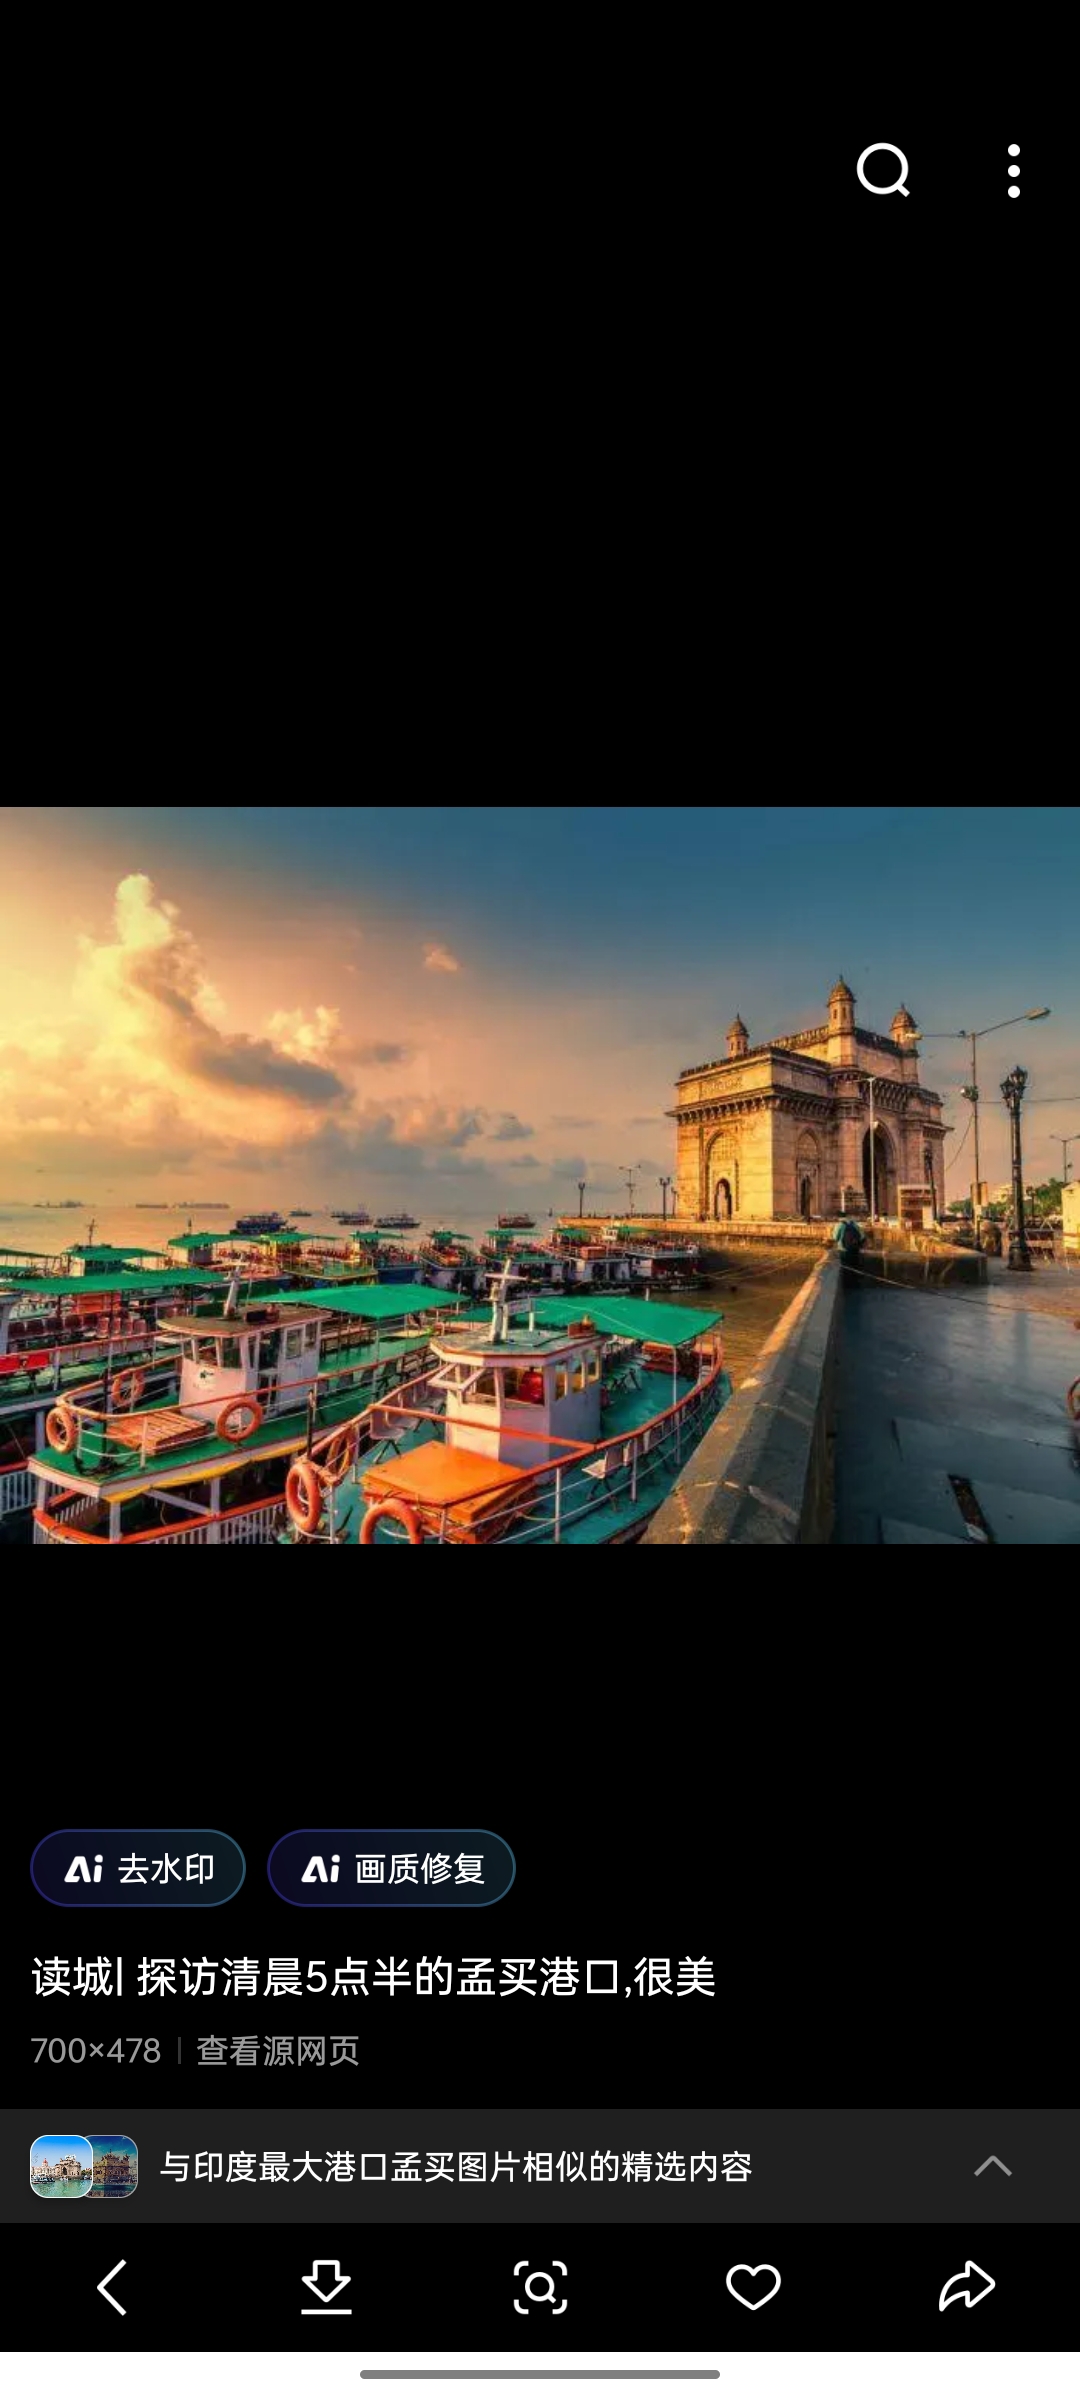 孟买港是印度最大的港口,由于孟买周围盛产棉花,所以孟买也是印度的棉纺织工业中心.